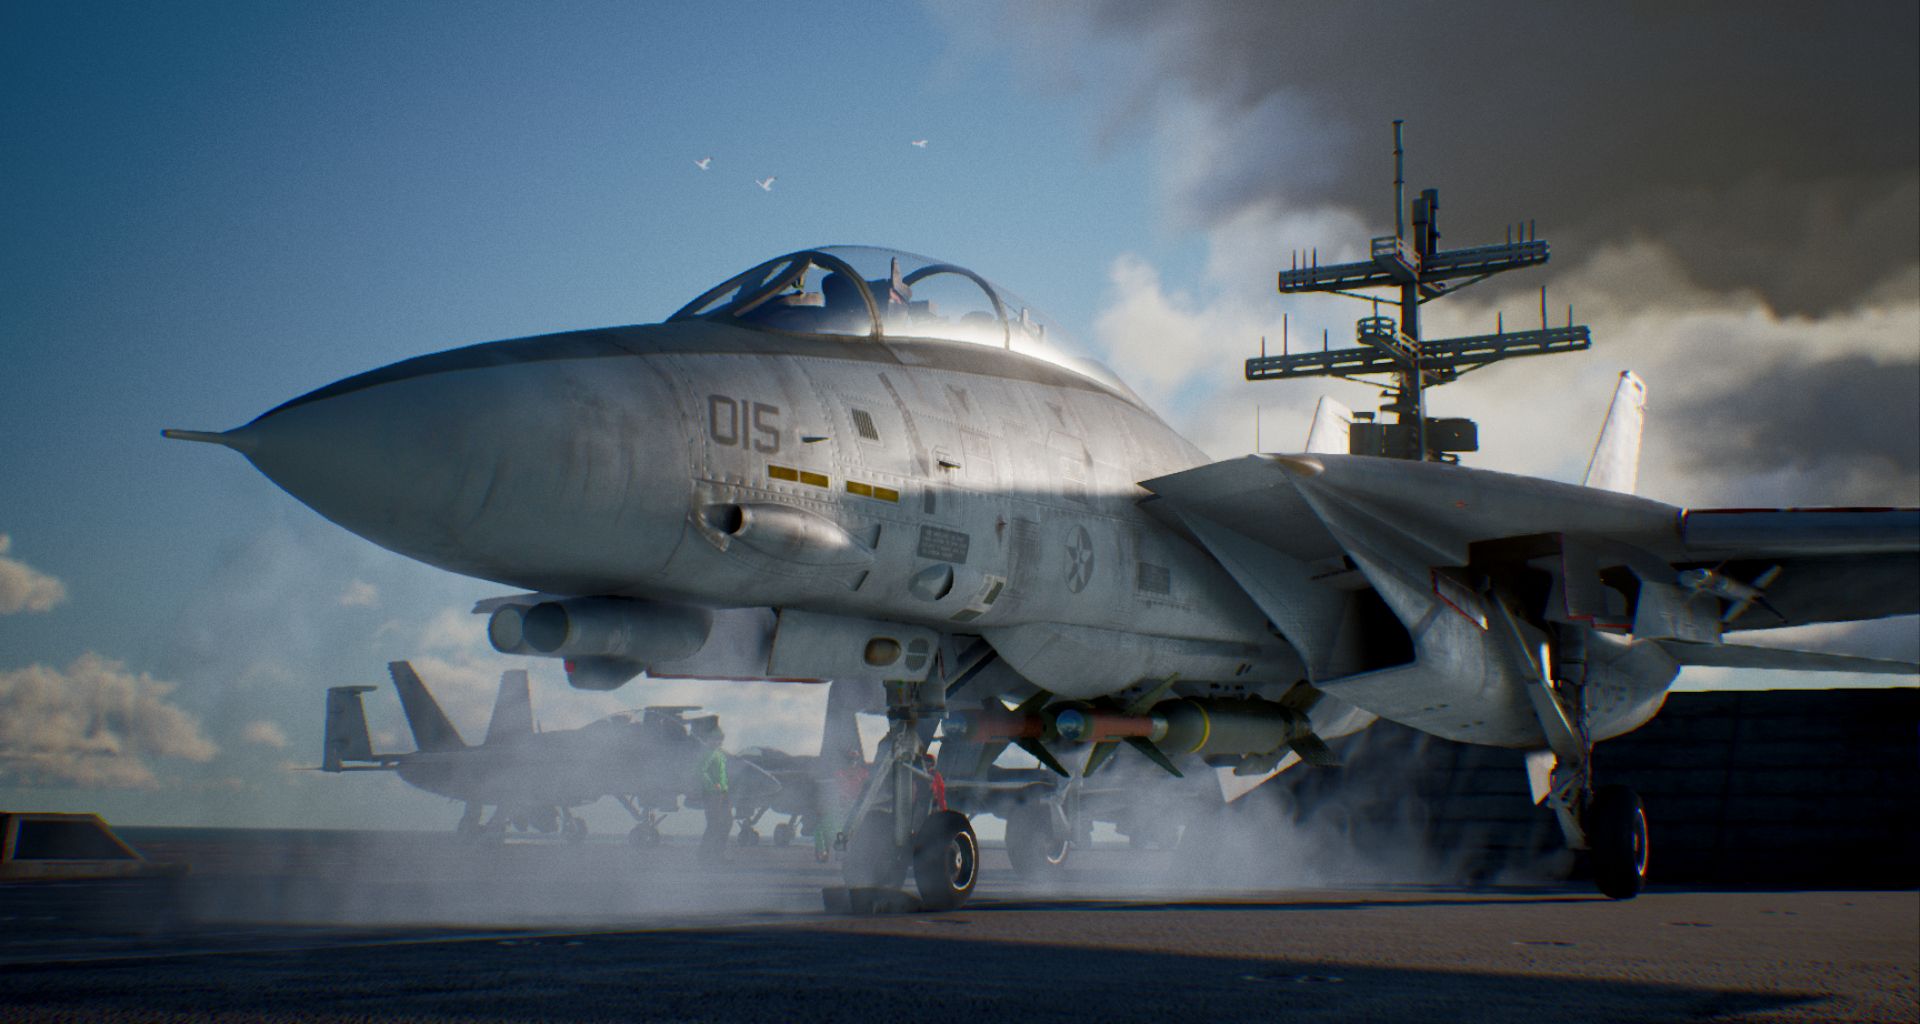 ACE Combat 7 confirma su lanzamiento para el próximo 19 de enero | Nuevo tráiler